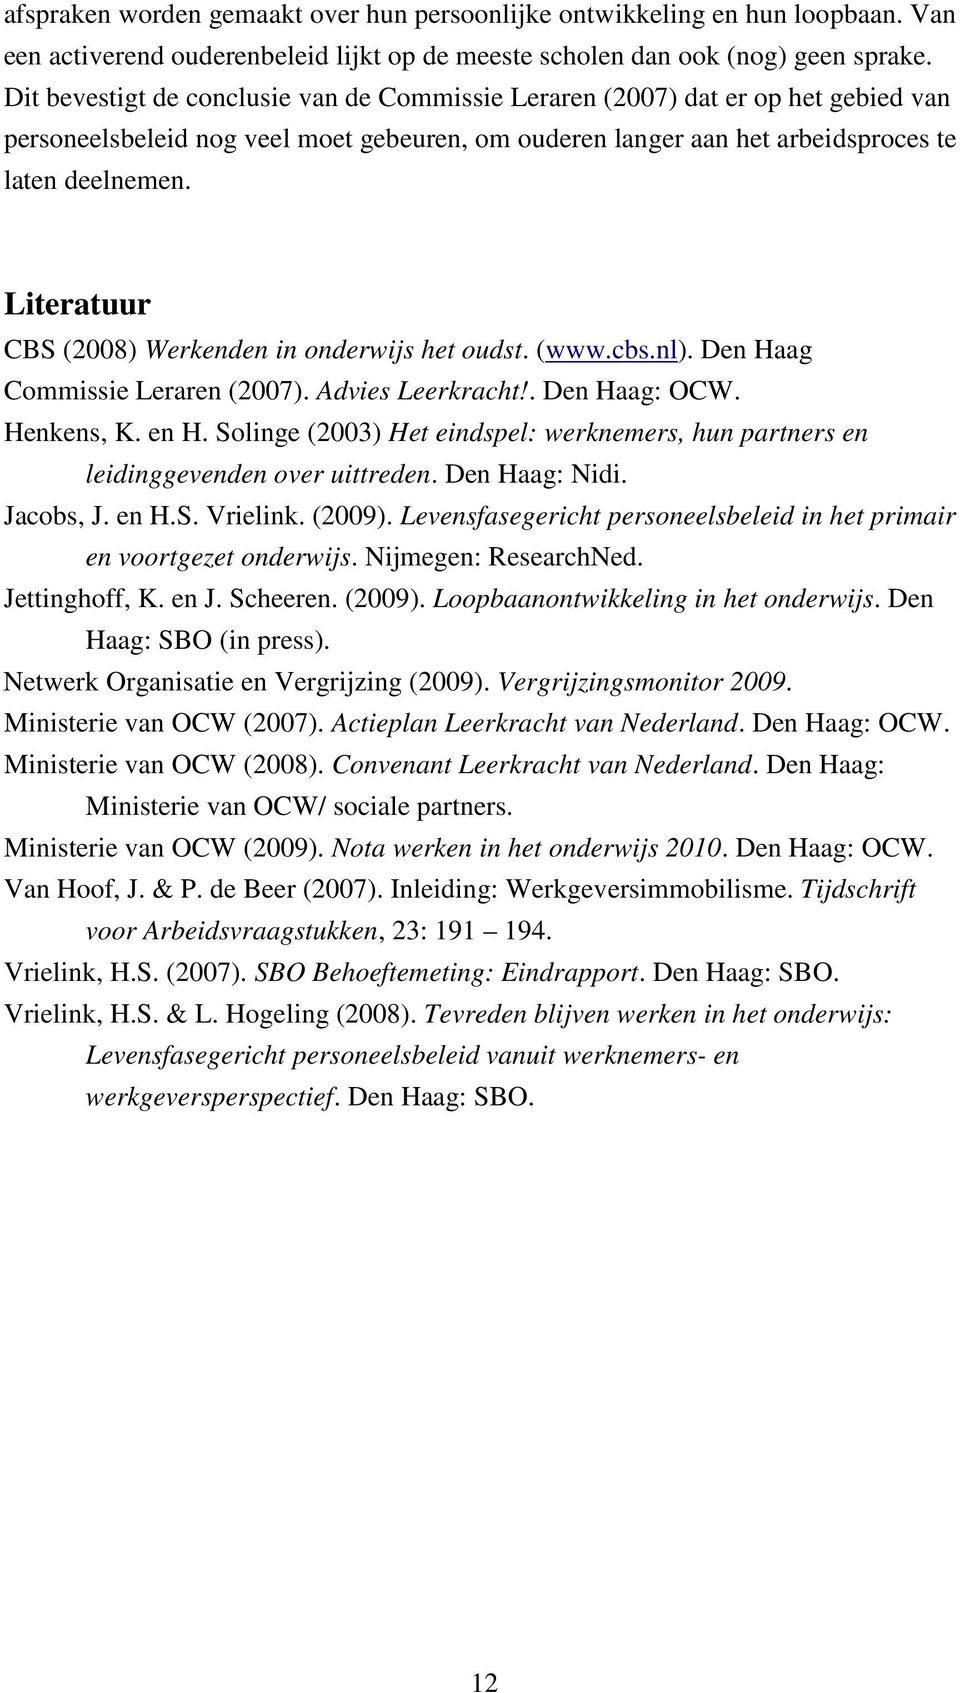 Literatuur CBS (2008) Werkenden in onderwijs het oudst. (www.cbs.nl). Den Haag Commissie Leraren (2007). Advies Leerkracht!. Den Haag: OCW. Henkens, K. en H.